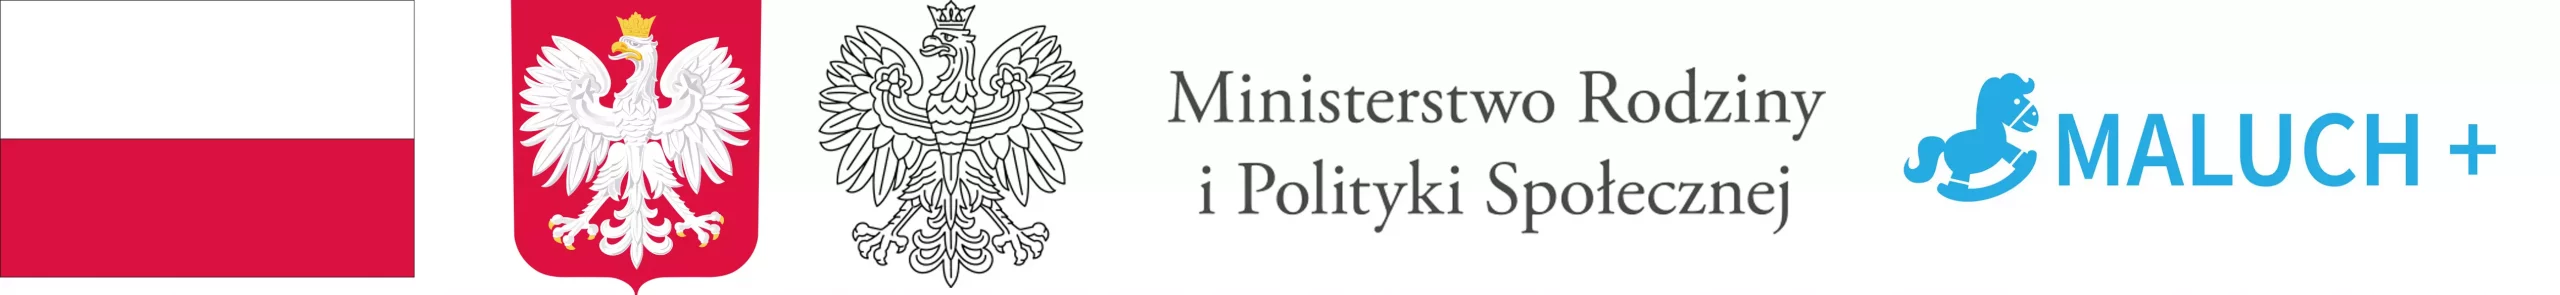 Flaga Polski, Orzeł Polski, Ministerstwo Rodziny i Polityki Społecznej i logo programu Maluch +